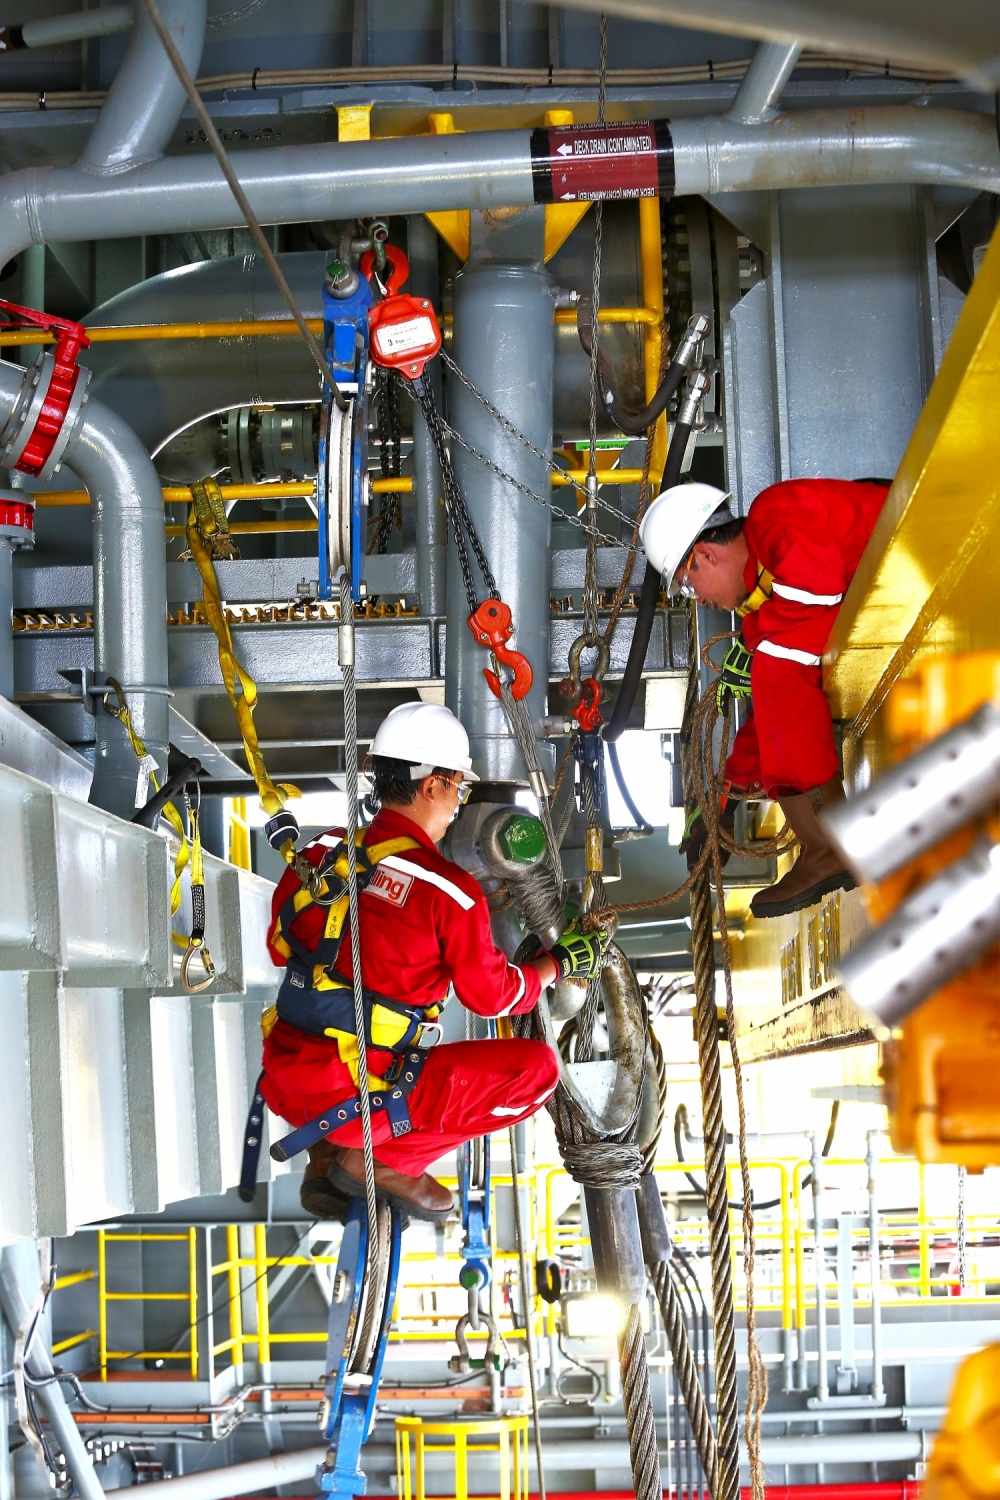 Công tác An toàn – Sức khỏe – Môi trường – Chất lượng tại PV Drilling: Thực hiện cải tiến liên tục và không có điểm dừng